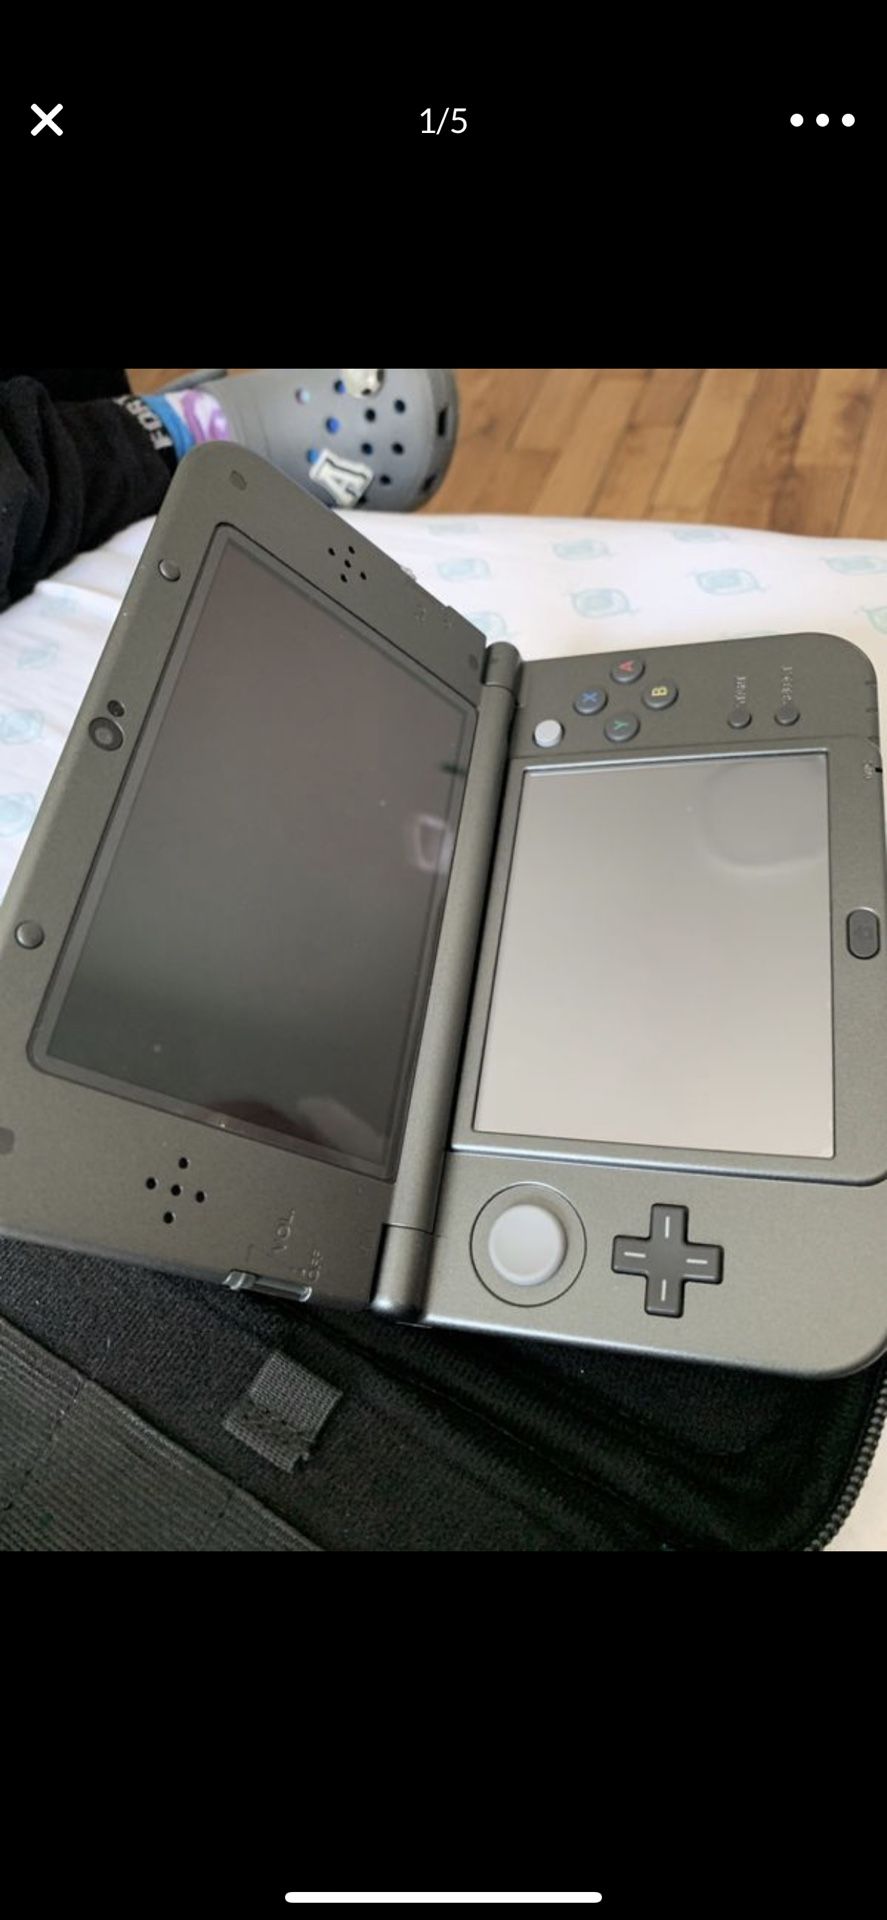 Nintendo 3DS XL with Pokémon x game